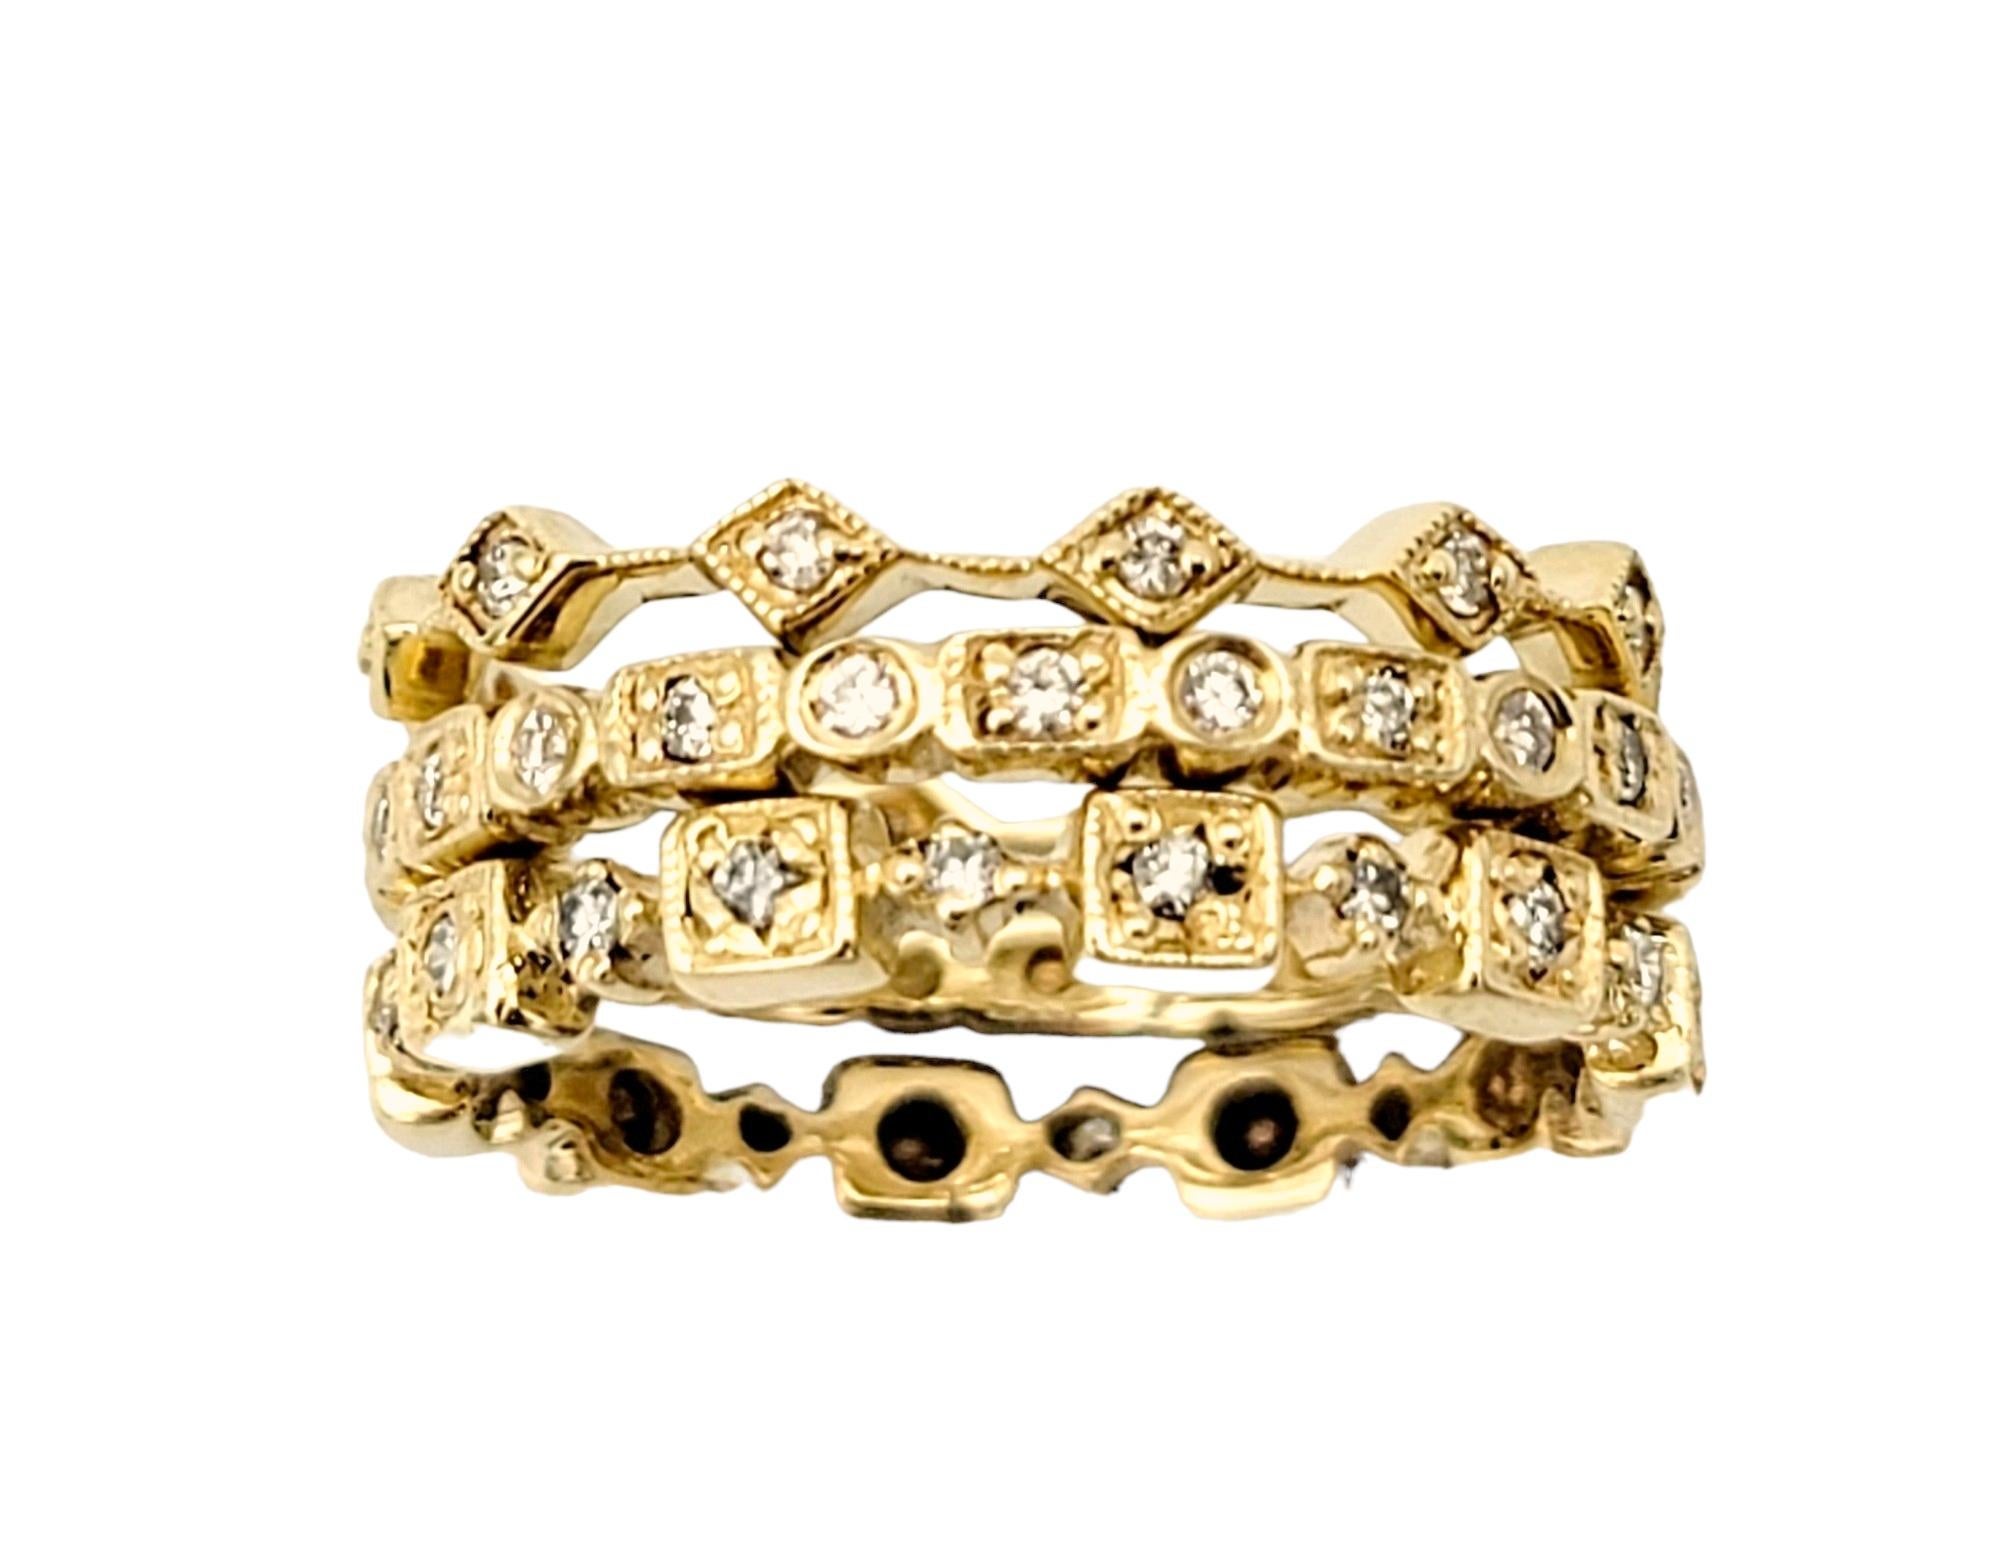 Ring Größe 7.25

Fügen Sie Ihrer Schmucksammlung moderne Schönheit hinzu mit unserem fesselnden Set aus 3 diamantenen, gestapelten Milgrain-Ringen. Jeder der sorgfältig aus glänzendem 14-karätigem Gelbgold gefertigten Ringe strahlt einen klassischen